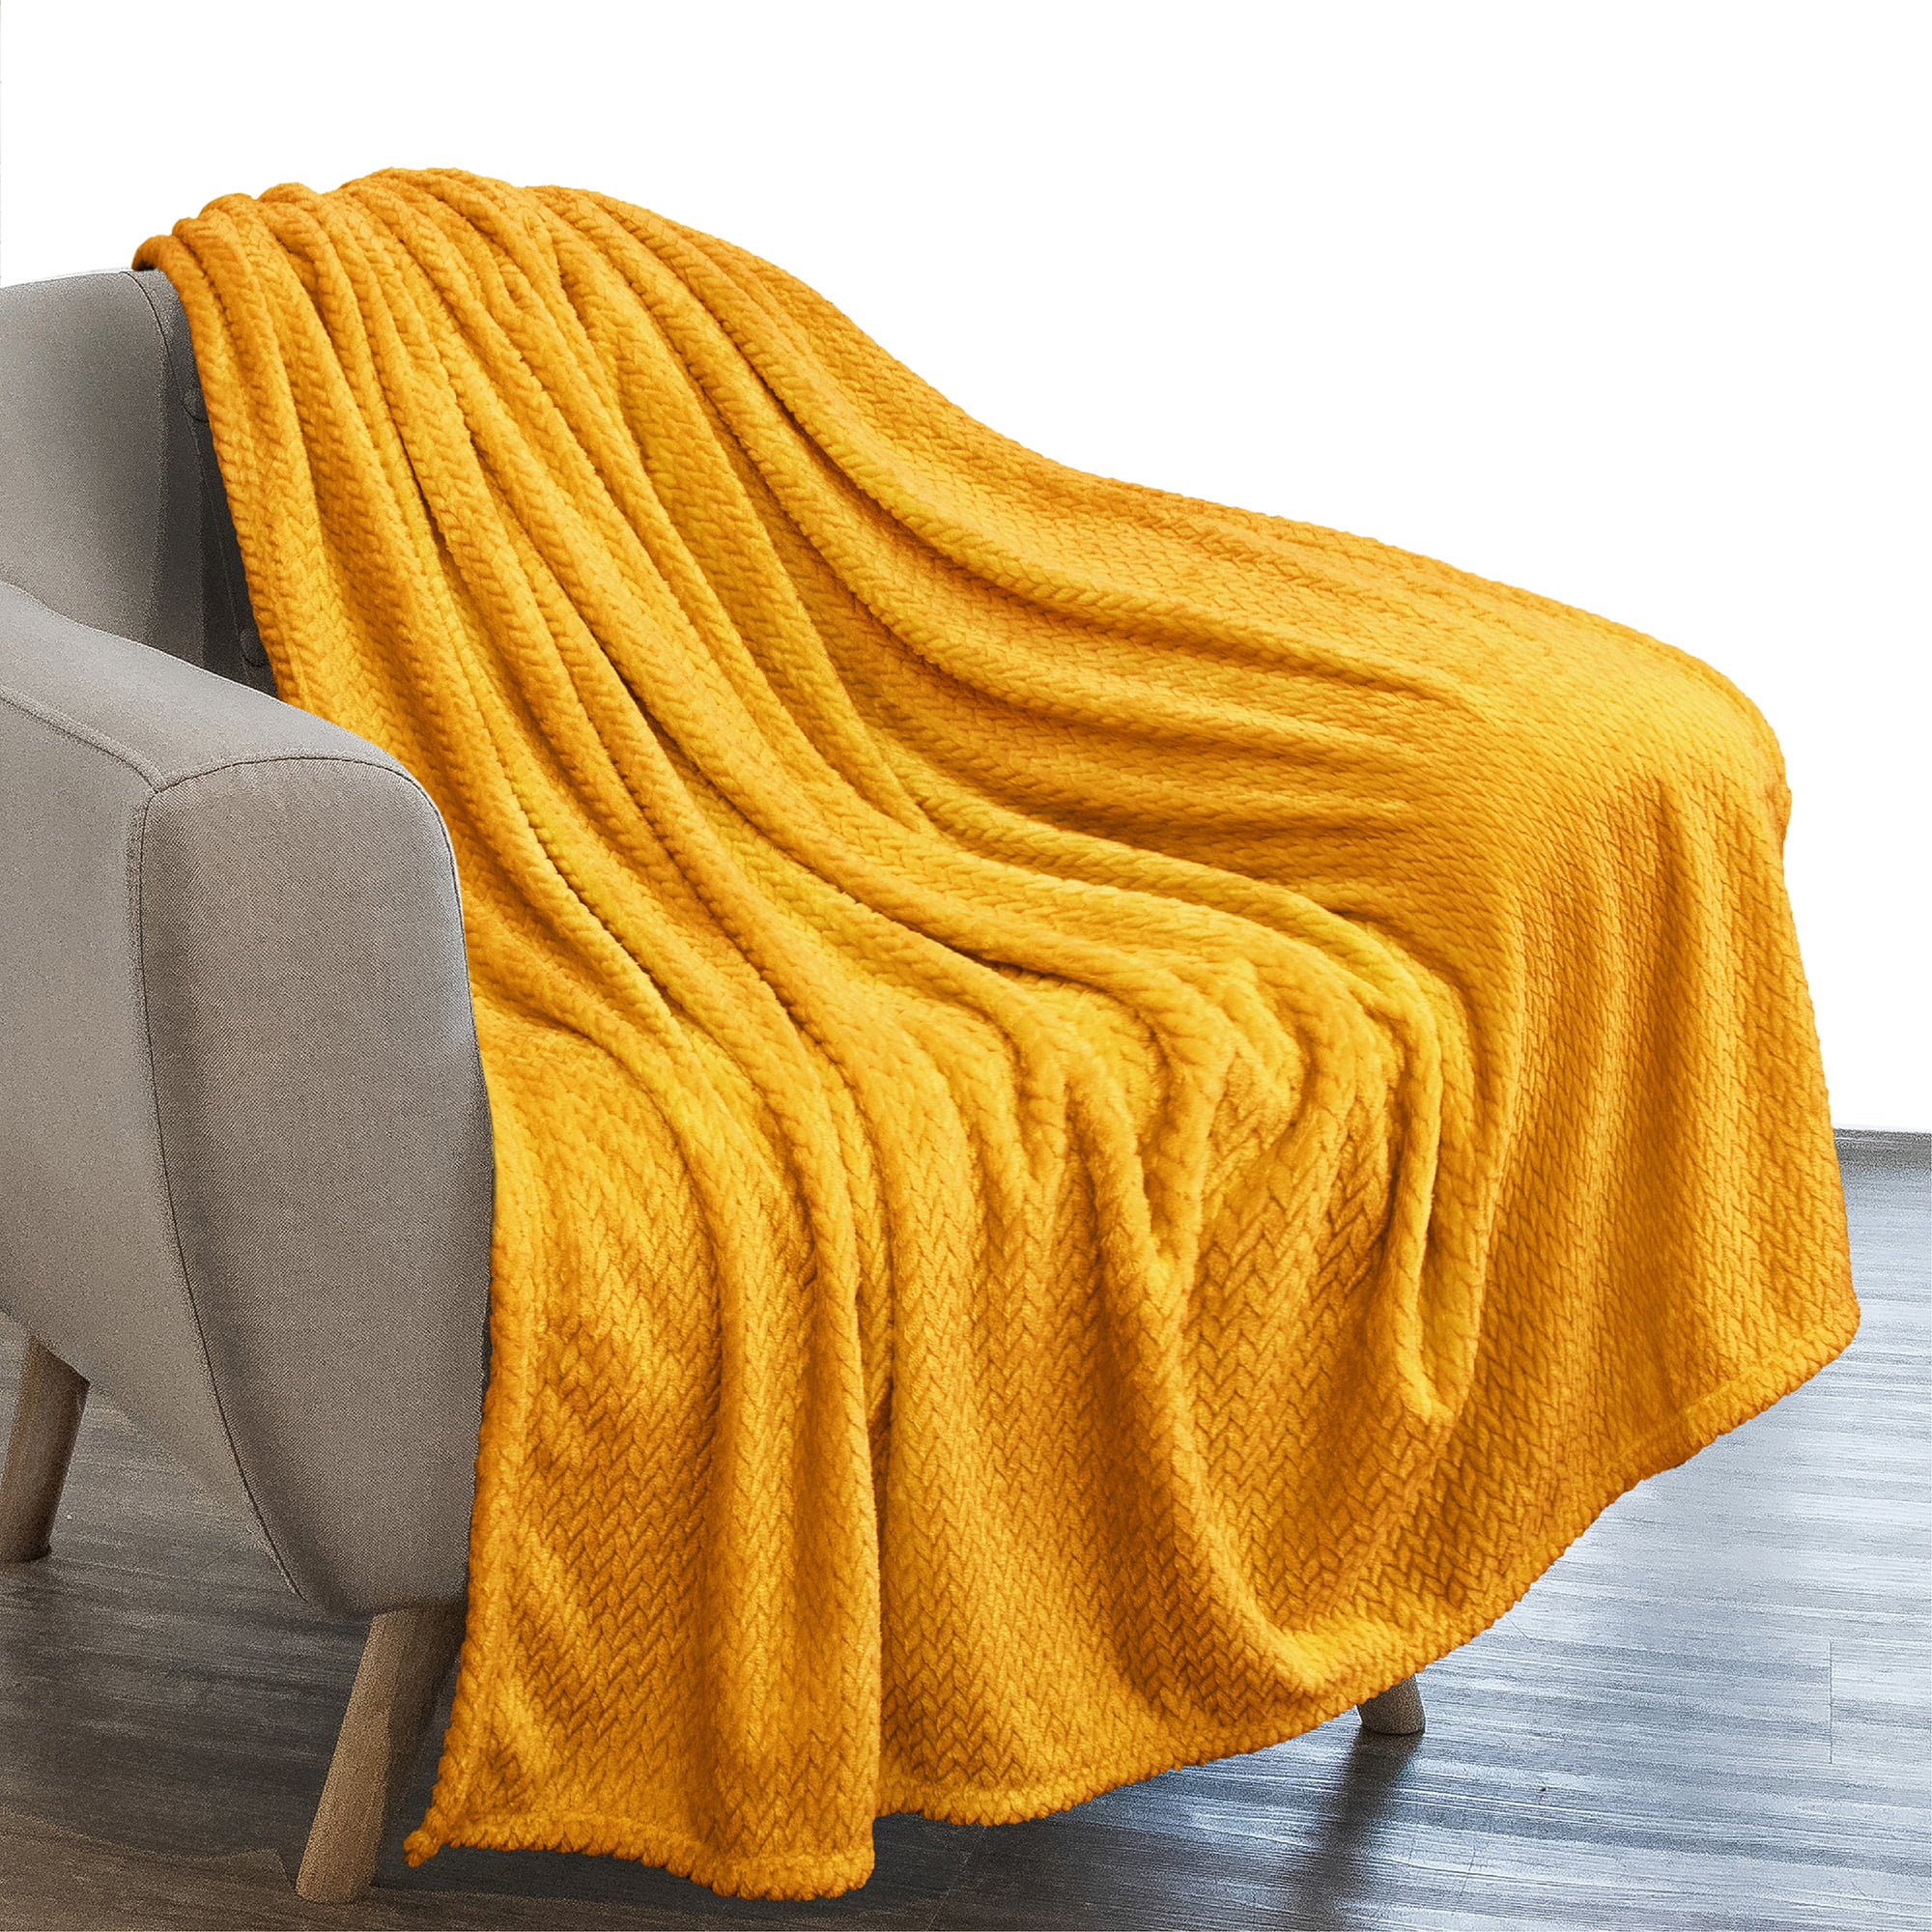 Fuzzy Flannel Fleece Throw Blanket Lightweight Couch Bed Soft Warm Plush Blanket 